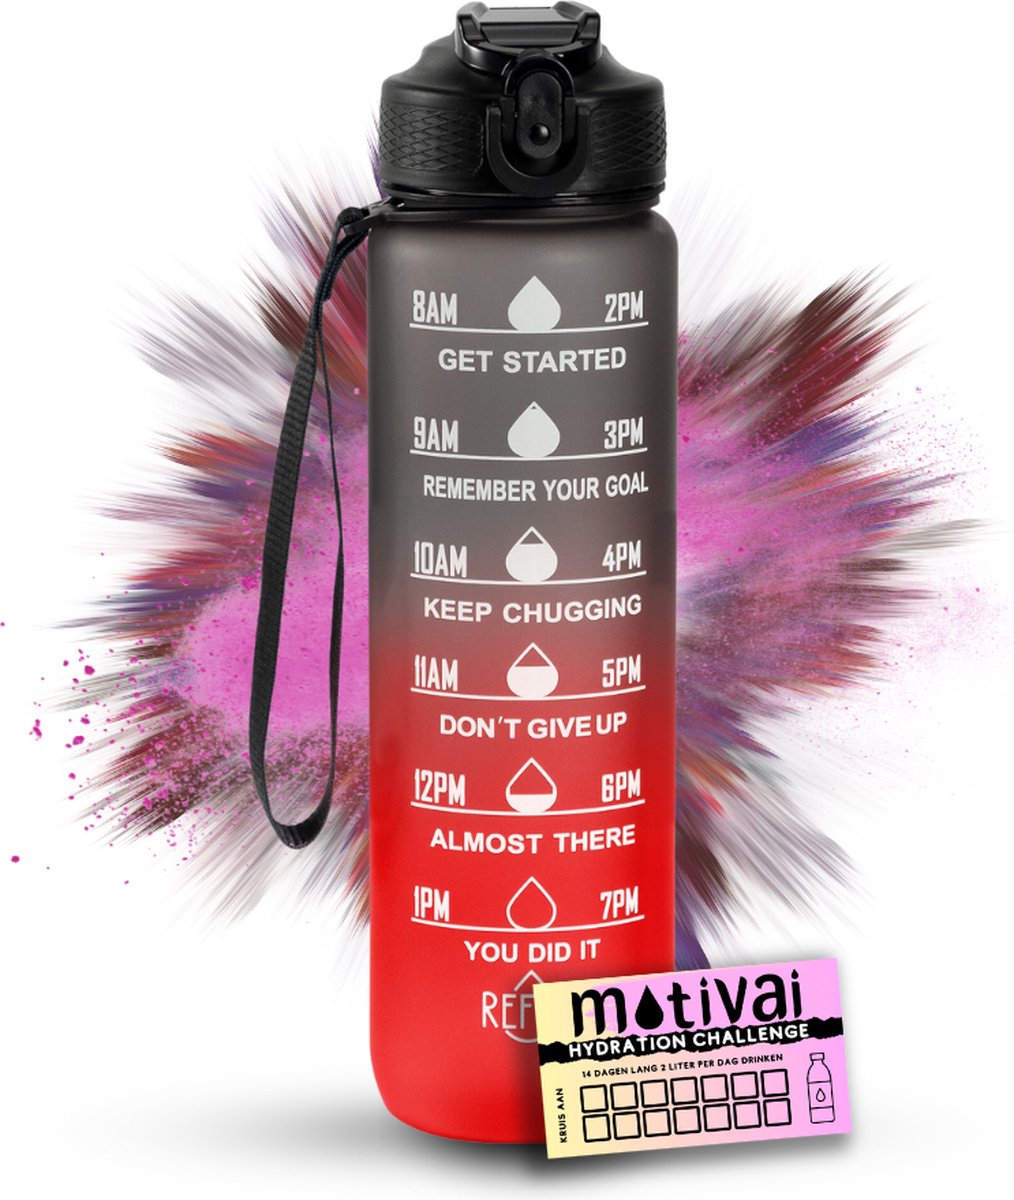 Motivatie Waterfles Motivai® - Zwart/Rood - Inclusief Extra Afsluitklepje - 1 Liter - Motiverende Drinkfles met Rietje - BPA Vrij - Met Motivai® Hydration Challenge